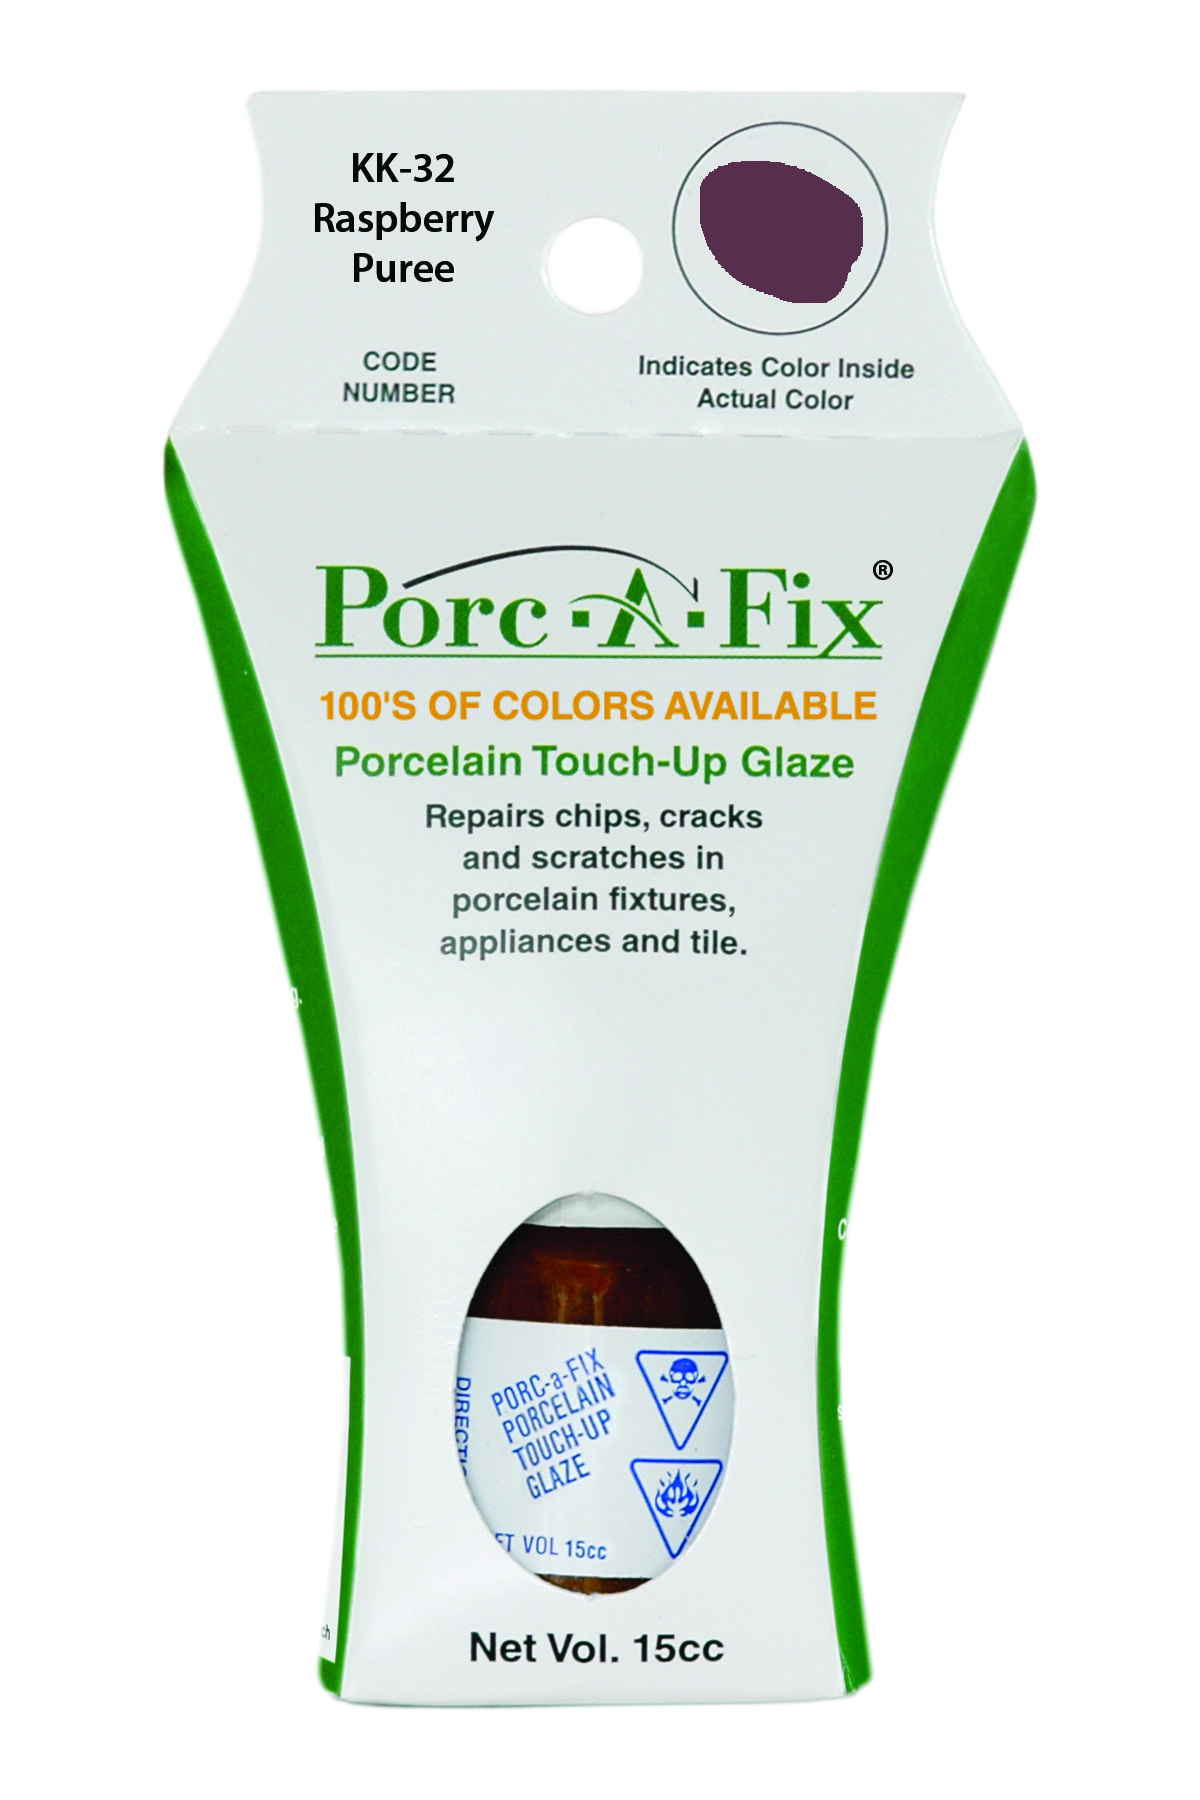 Fixture-Fix | KK-32 | Porc-A-Fix Touch-Up Glaze Kohler Raspberry Puree - Compatible with Kohler K-500306-53 Touch Up Paint Kit - RASPBERRY PUREE